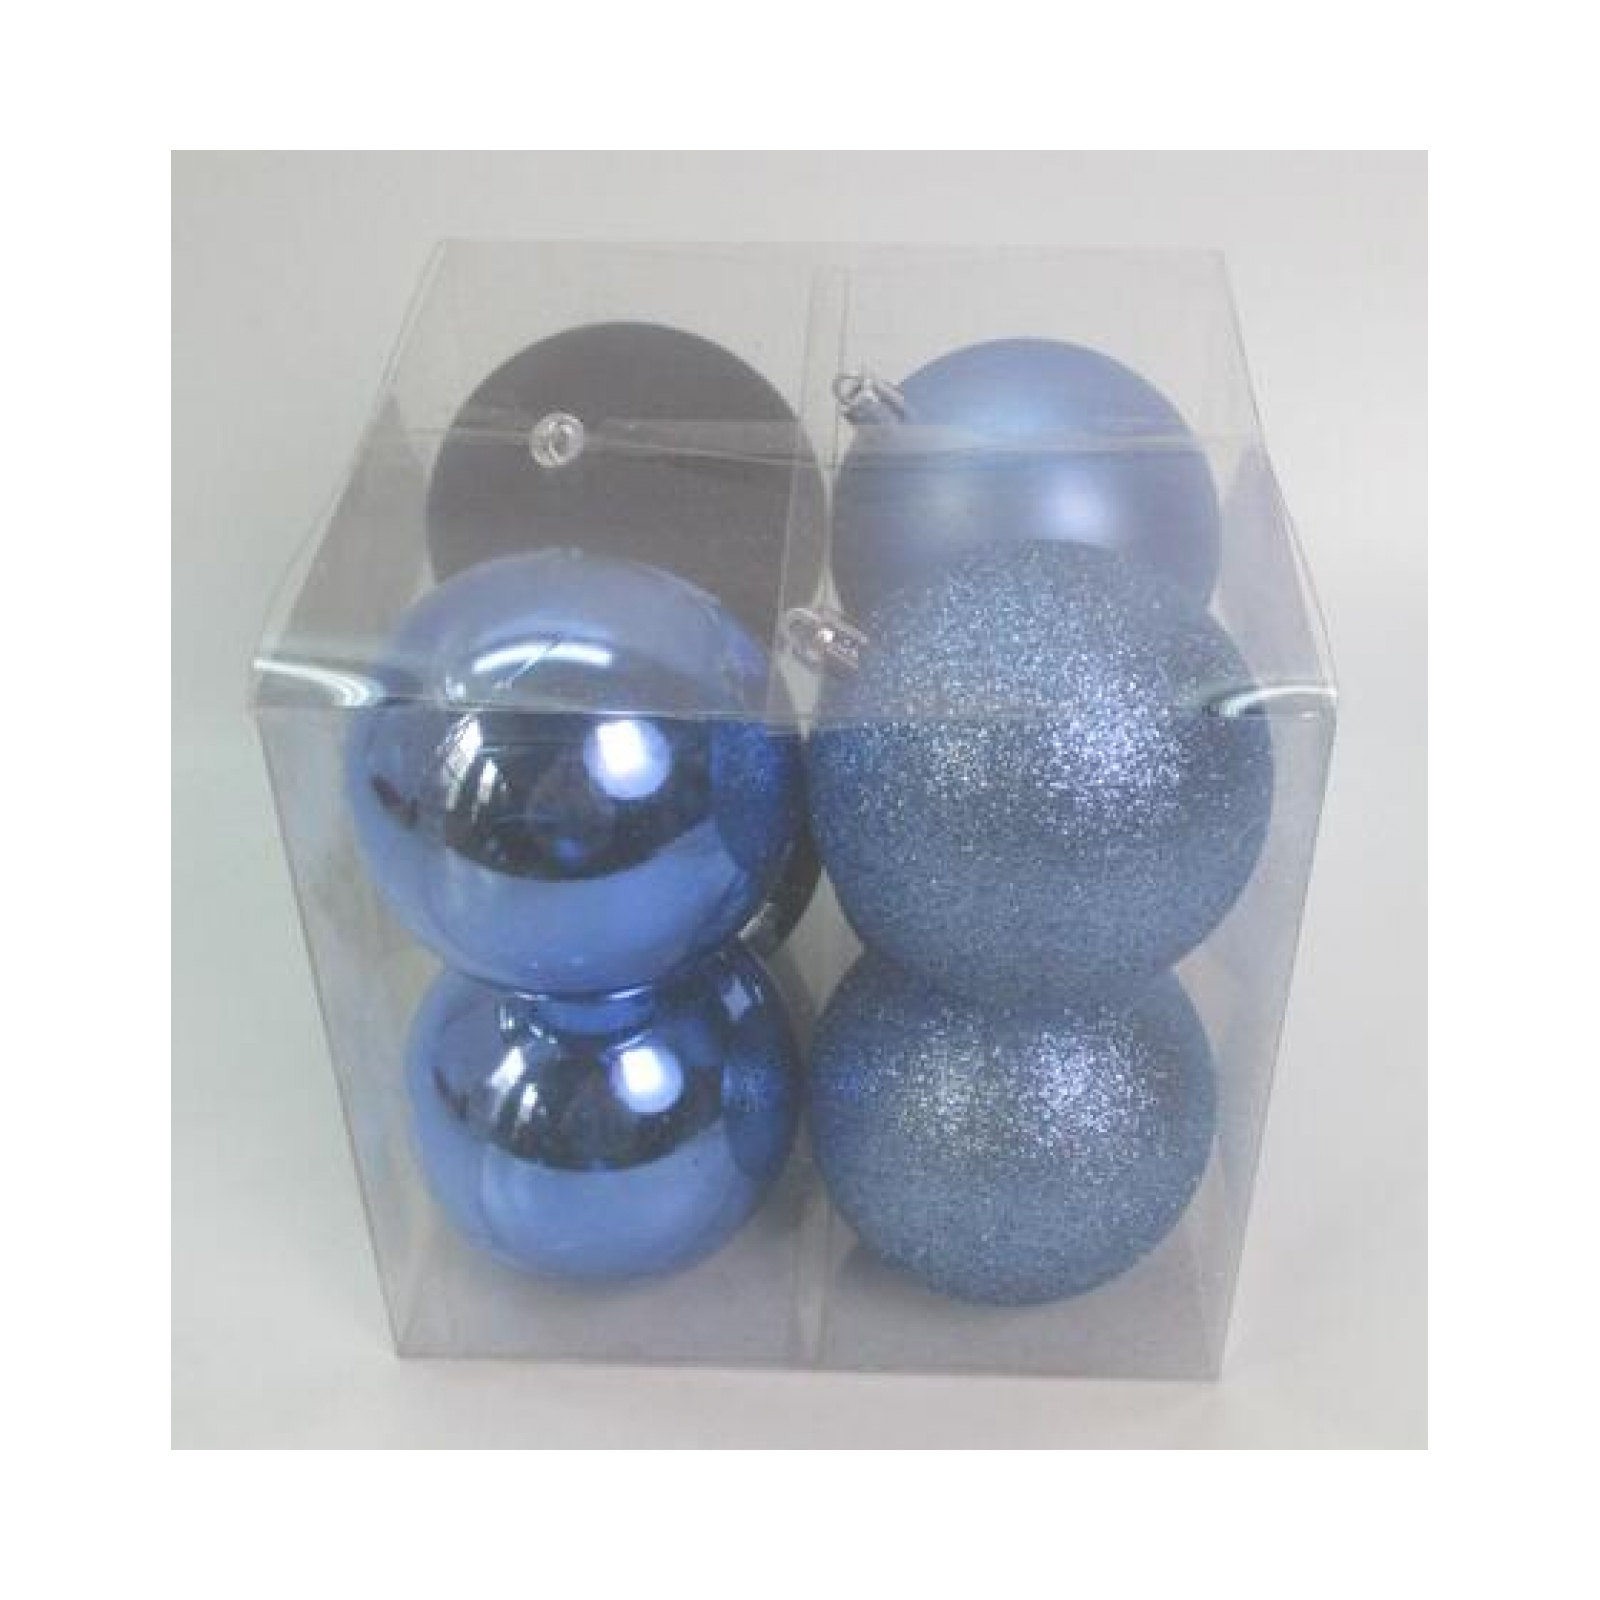 Ялинкова іграшка Novogod`ko 8 шт блакитний mix 8 см (974417)